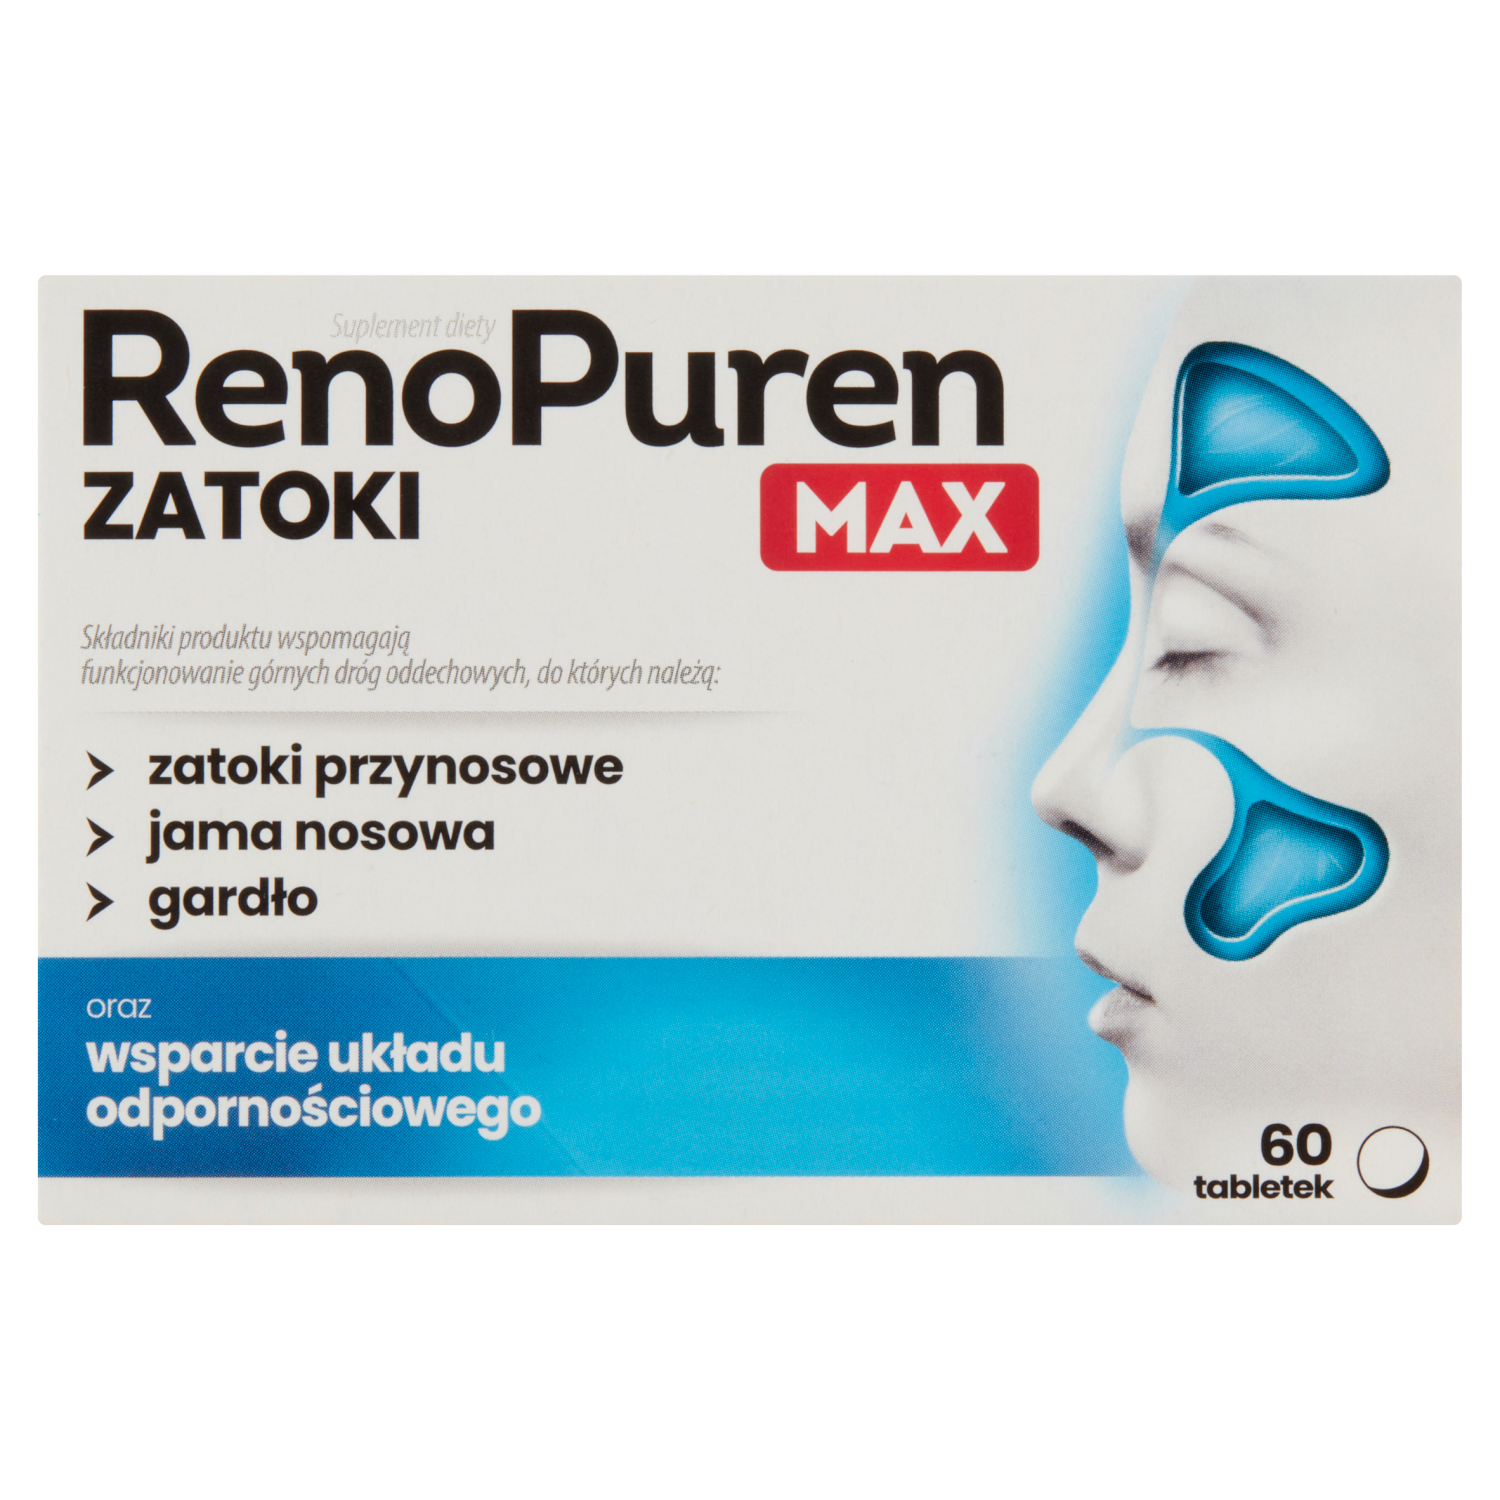 linea detox биологически активная добавка 60 таблеток 1 упаковка Renopuren Zatoki Max биологически активная добавка, 60 таблеток/1 упаковка